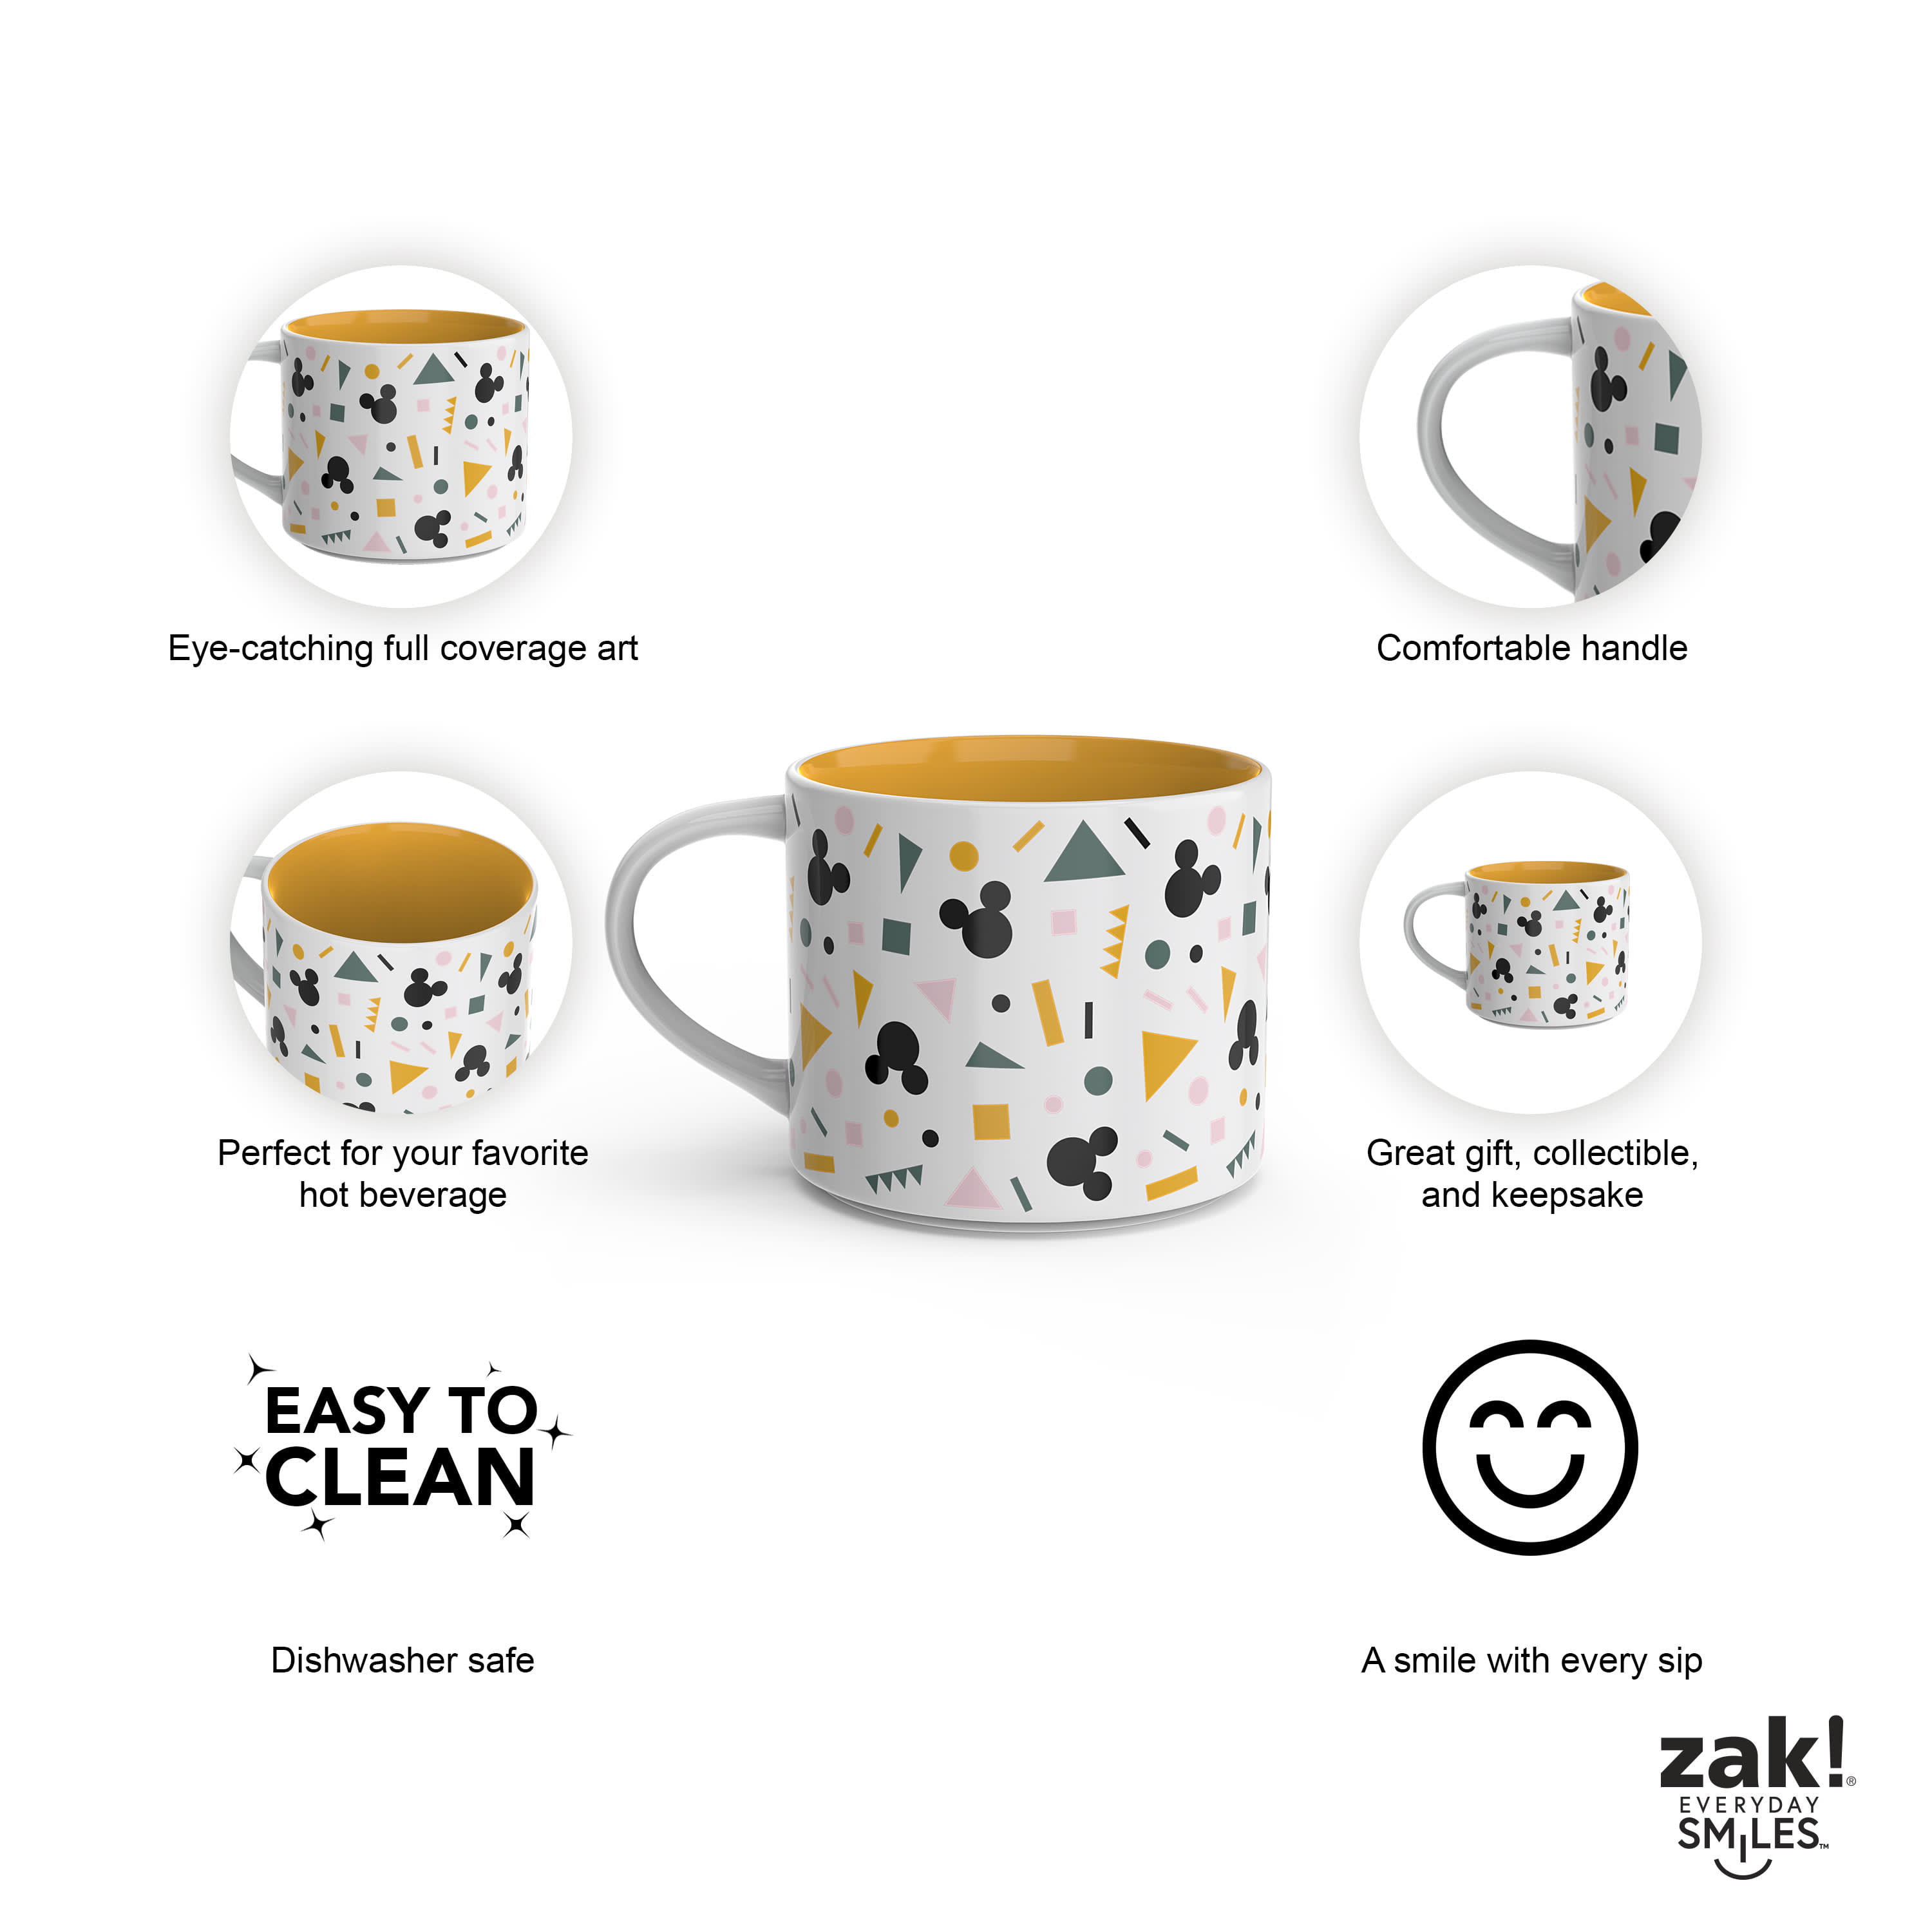 Zak Designs Ceramic Modern Mug Disney Princess 15 oz Capacity